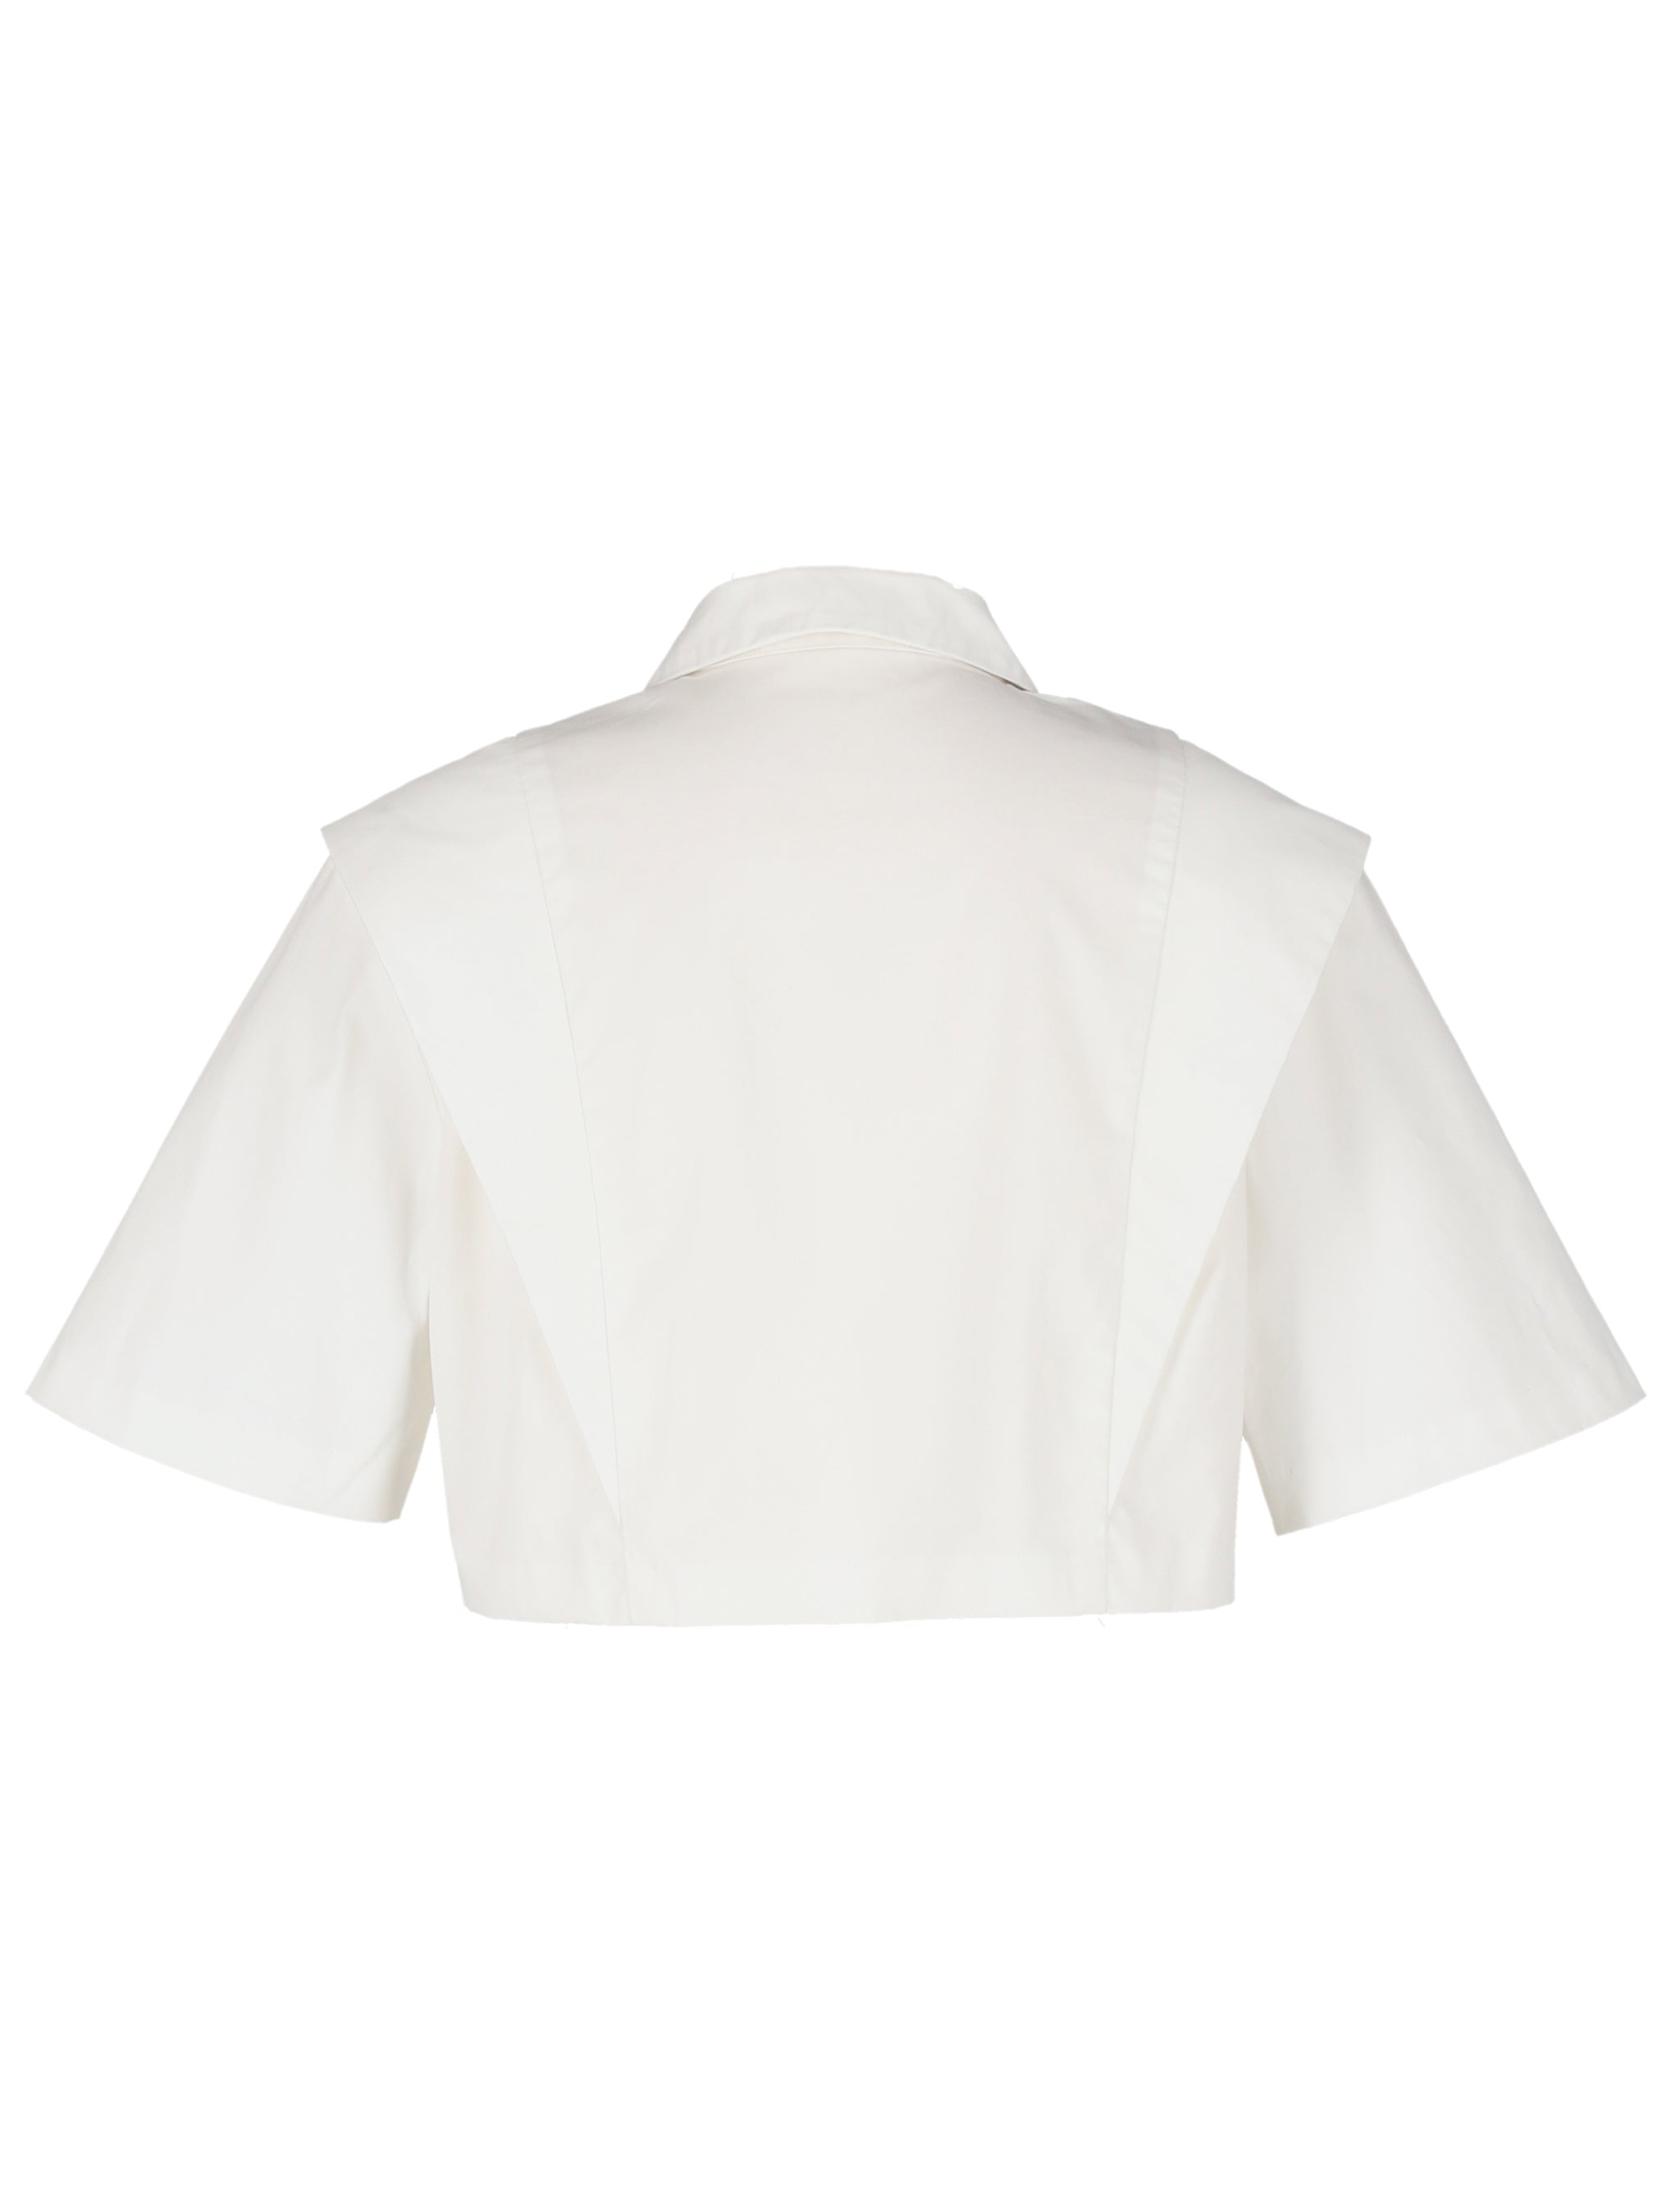 barrymore color blouse